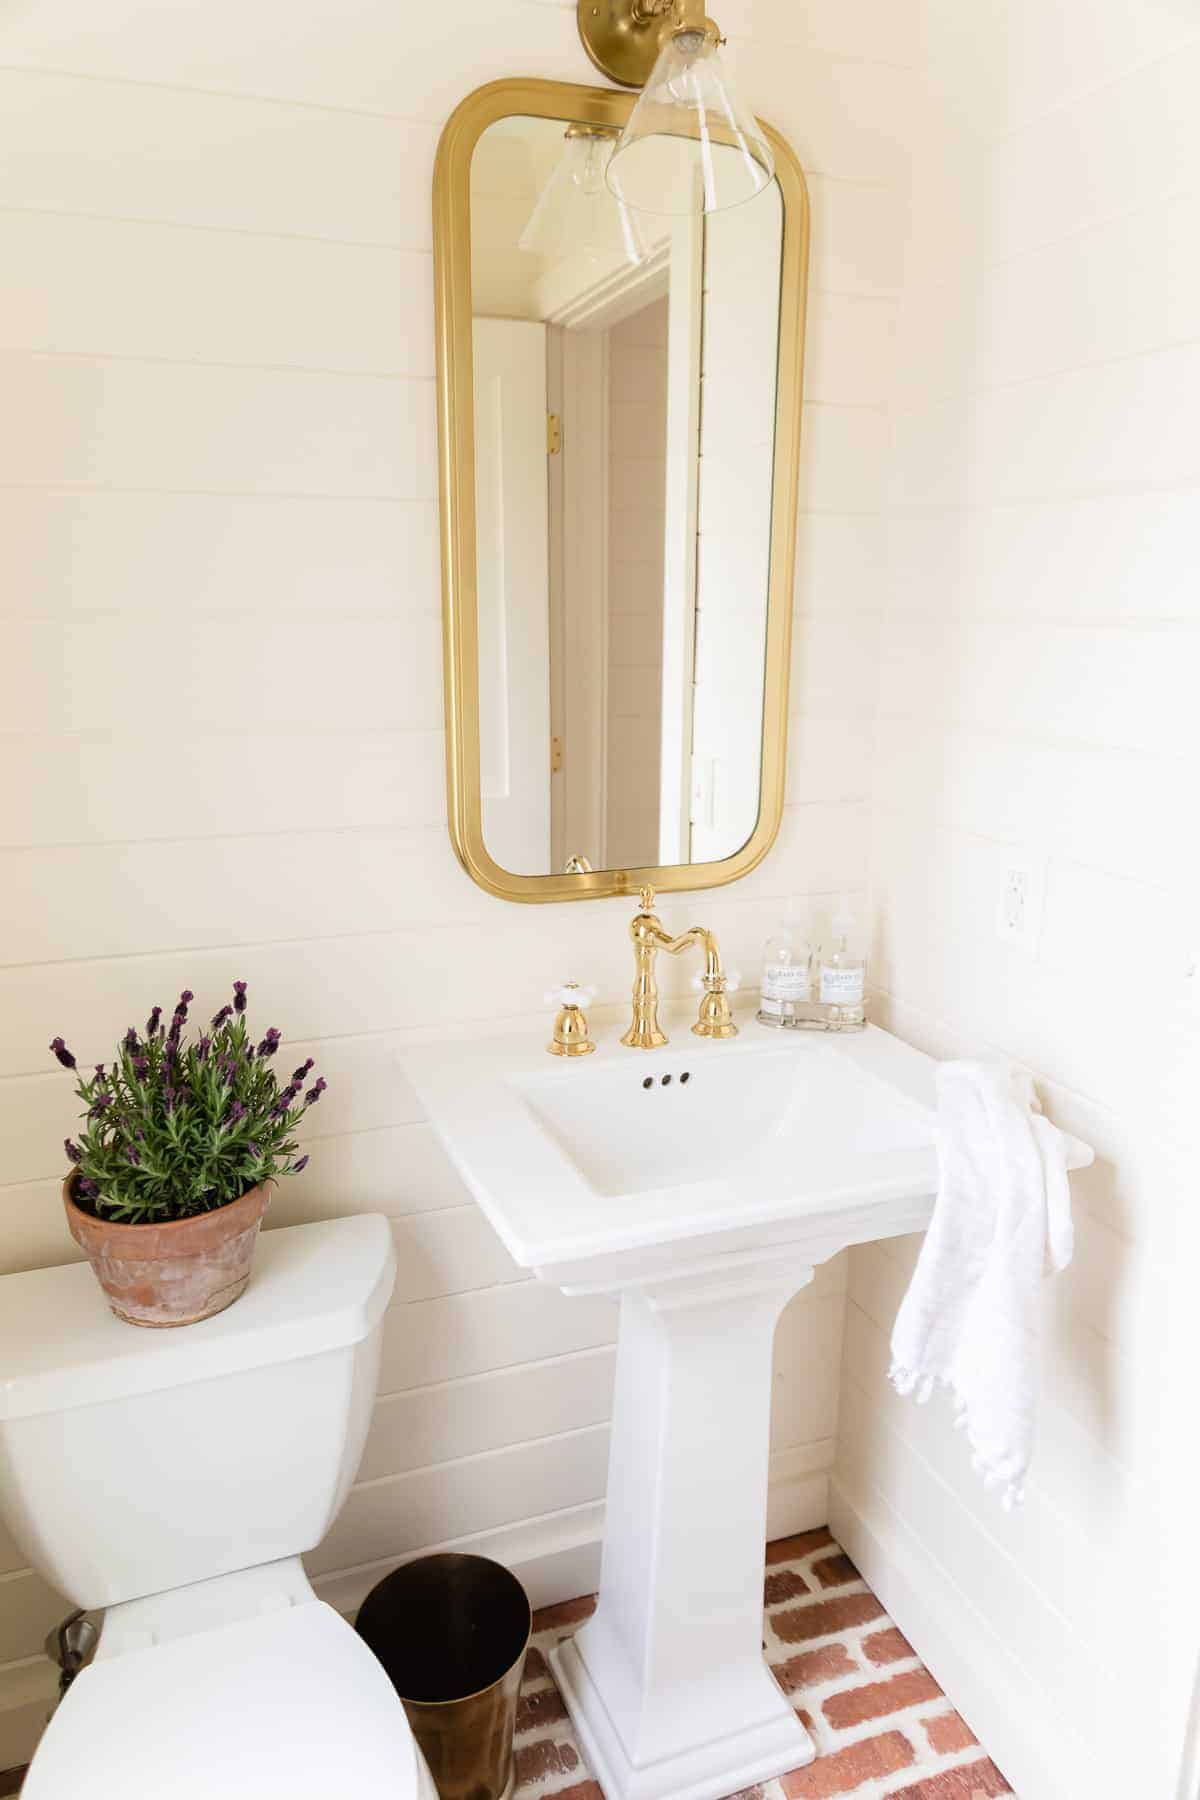 黄铜壁灯在镜子上，沉入浴室